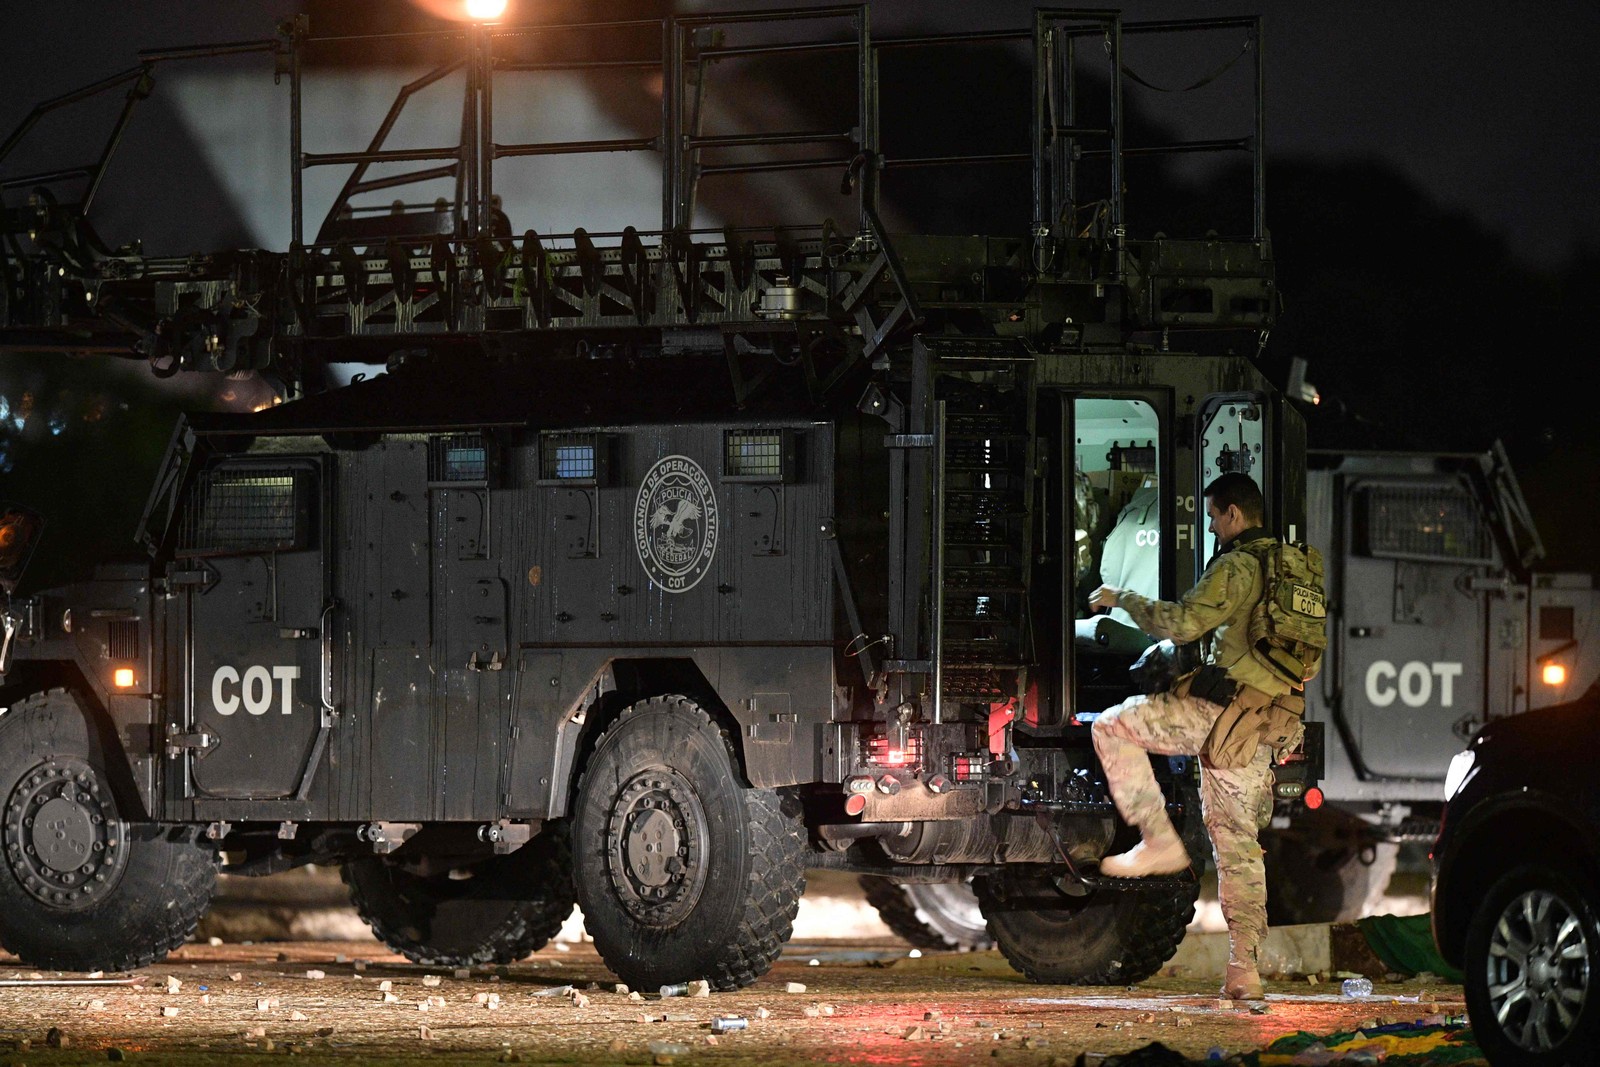 Comando de Operações Especiais (COT) da PF trabalha na STF durante madrugada depois de intento golpista de bolsonaristas — Foto: Carl de Souza/AFP